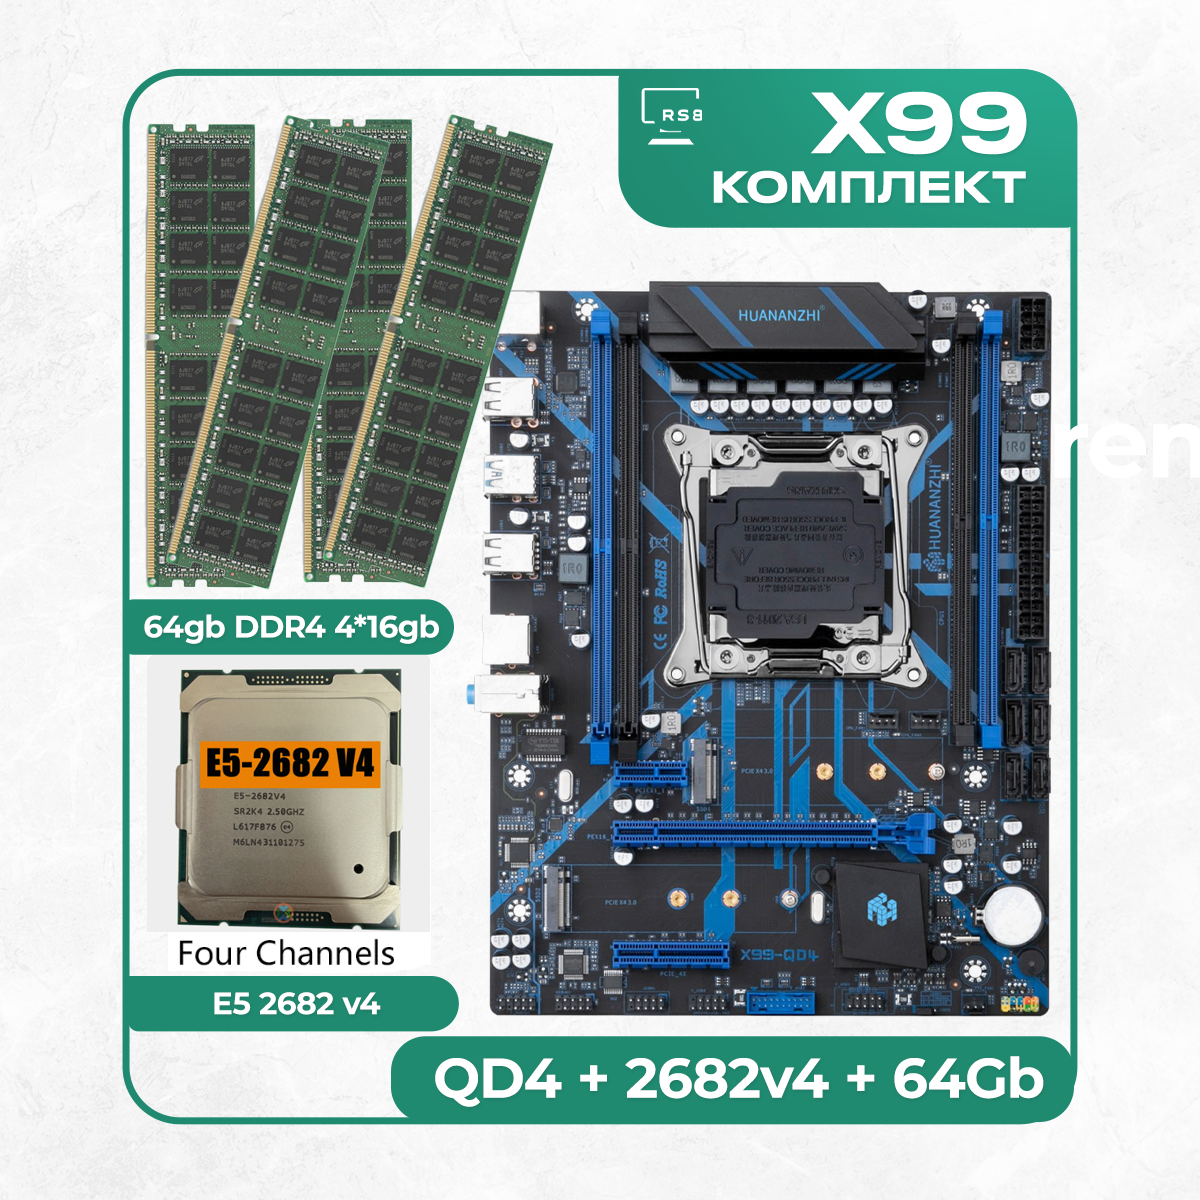 Комплект материнской платы X99: Huananzhi QD4 2011v3 + Процессор Intel Xeon E5 2667v4 + Оперативная память DDR4 2133Мгц 4шт